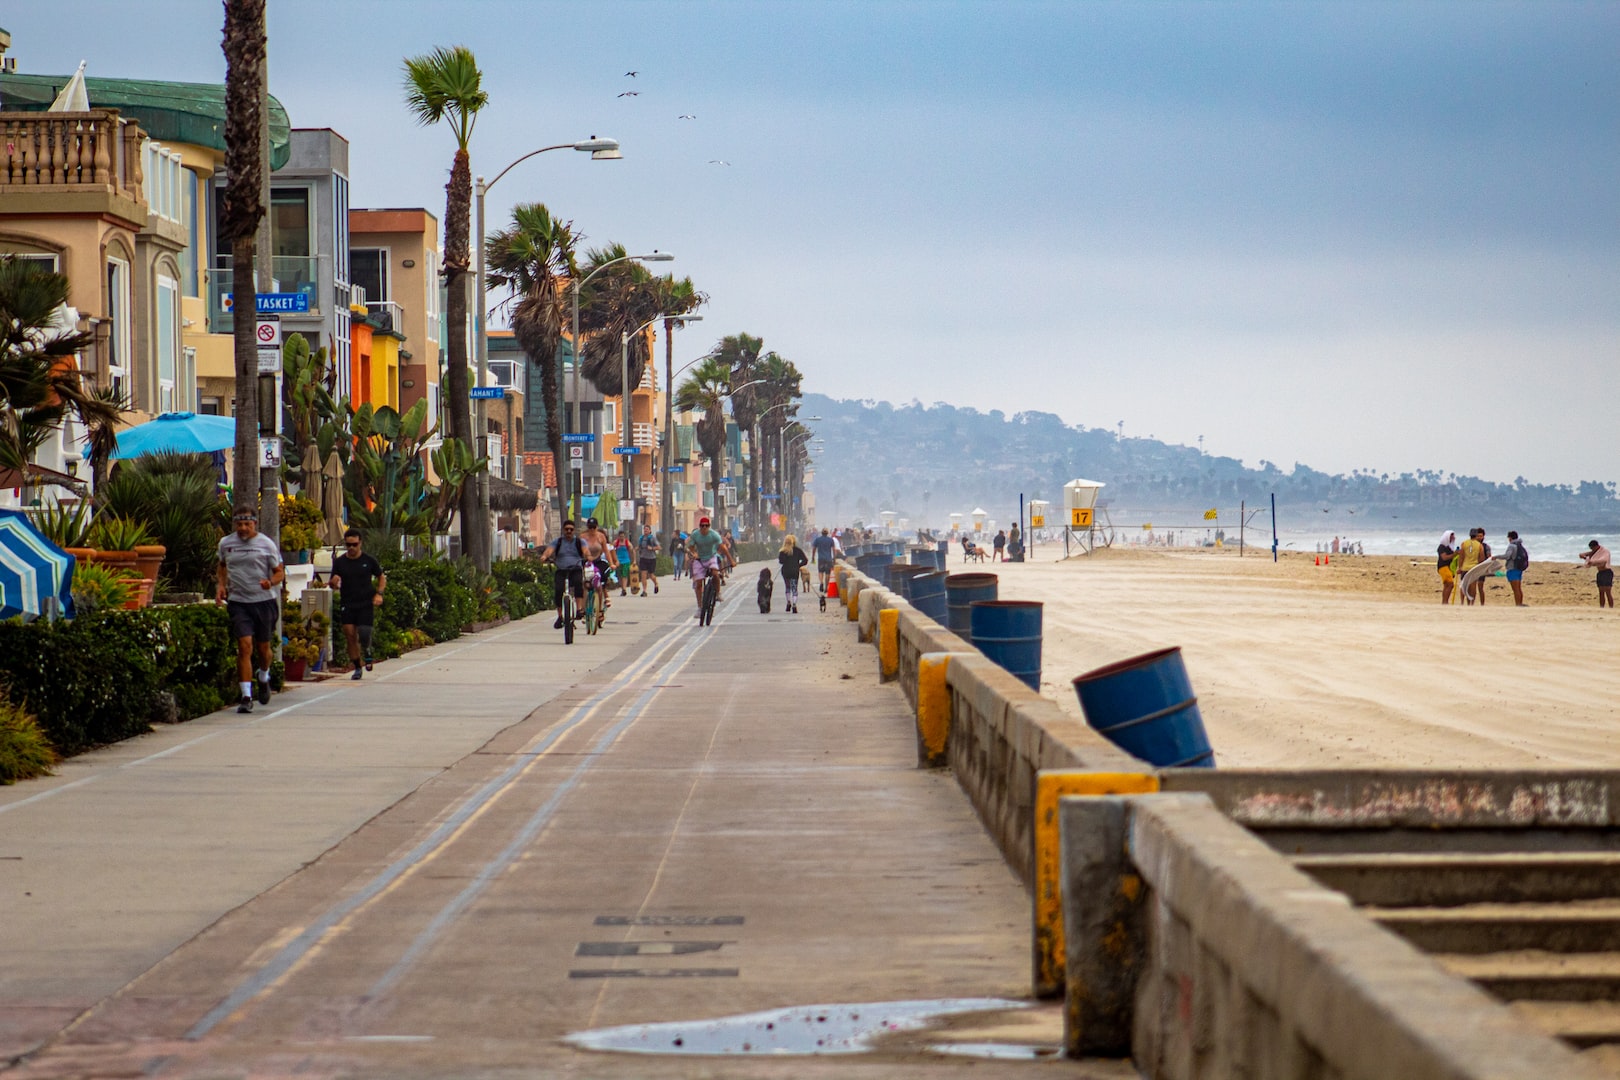 San Diego Beach Boardwalk